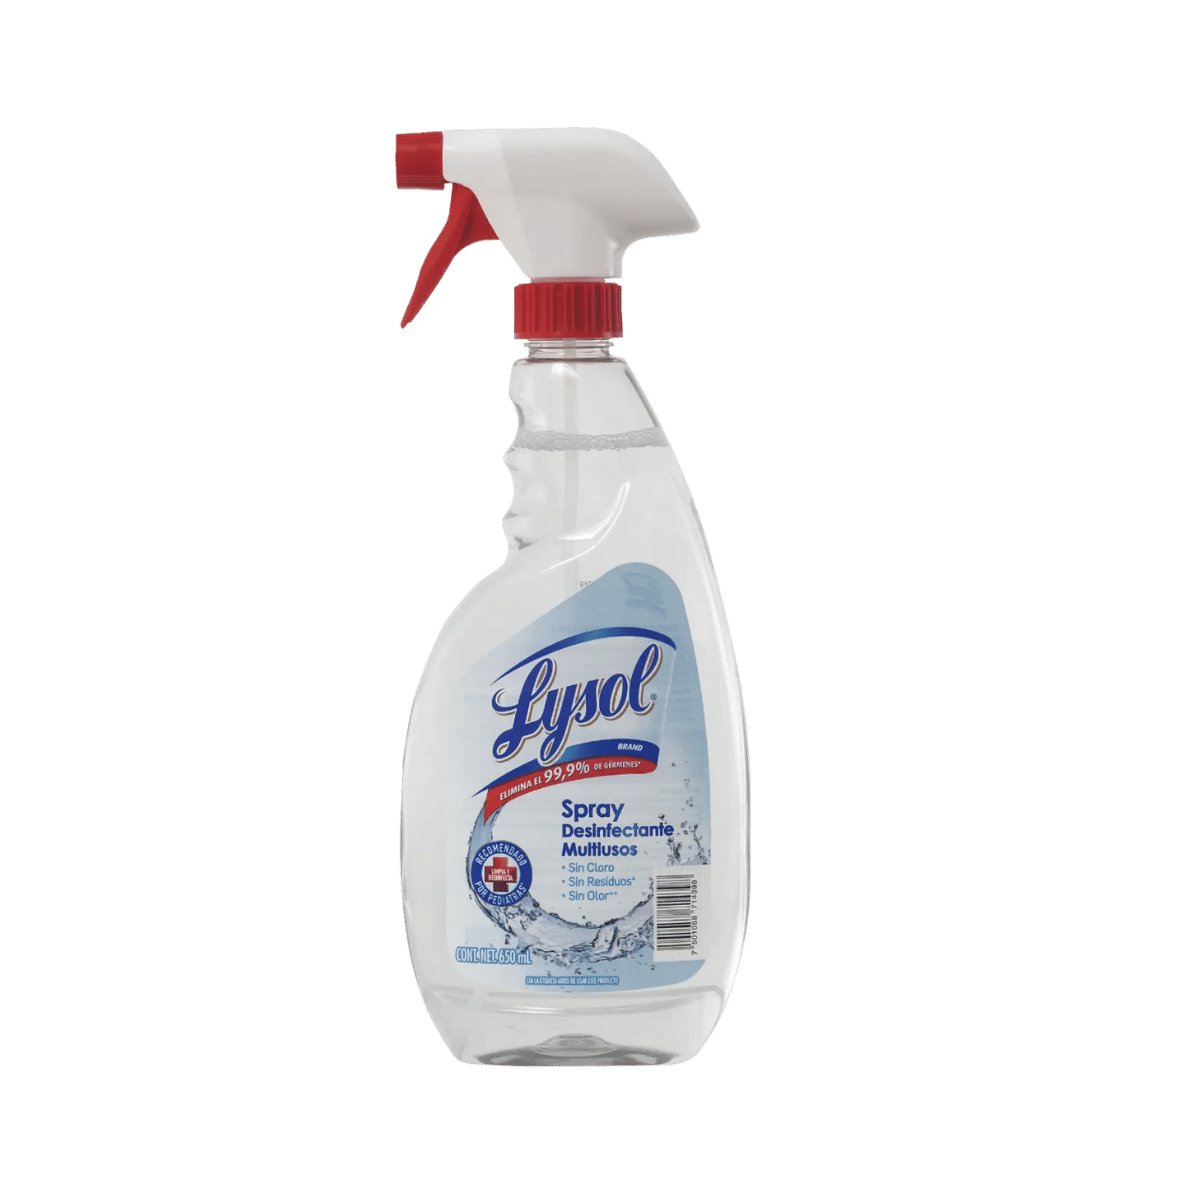 Lysol® Spray Desinfectante Multiusos - Trigger – Karlan ¡Marca la Limpieza!